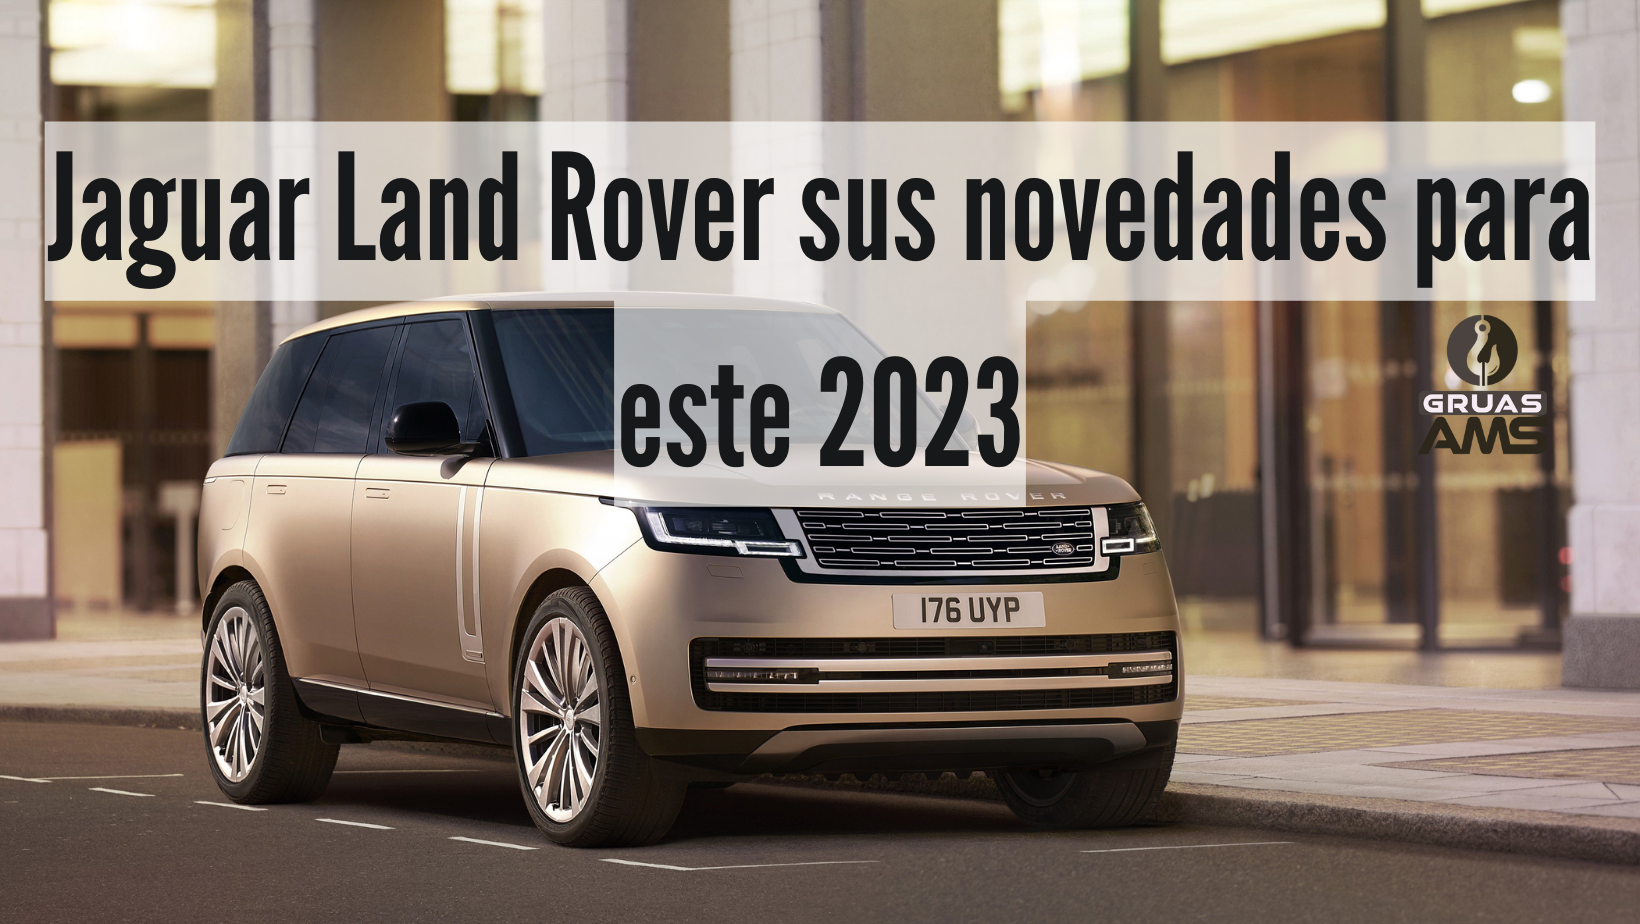 Jaguar Land Rover sus novedades para este 2023